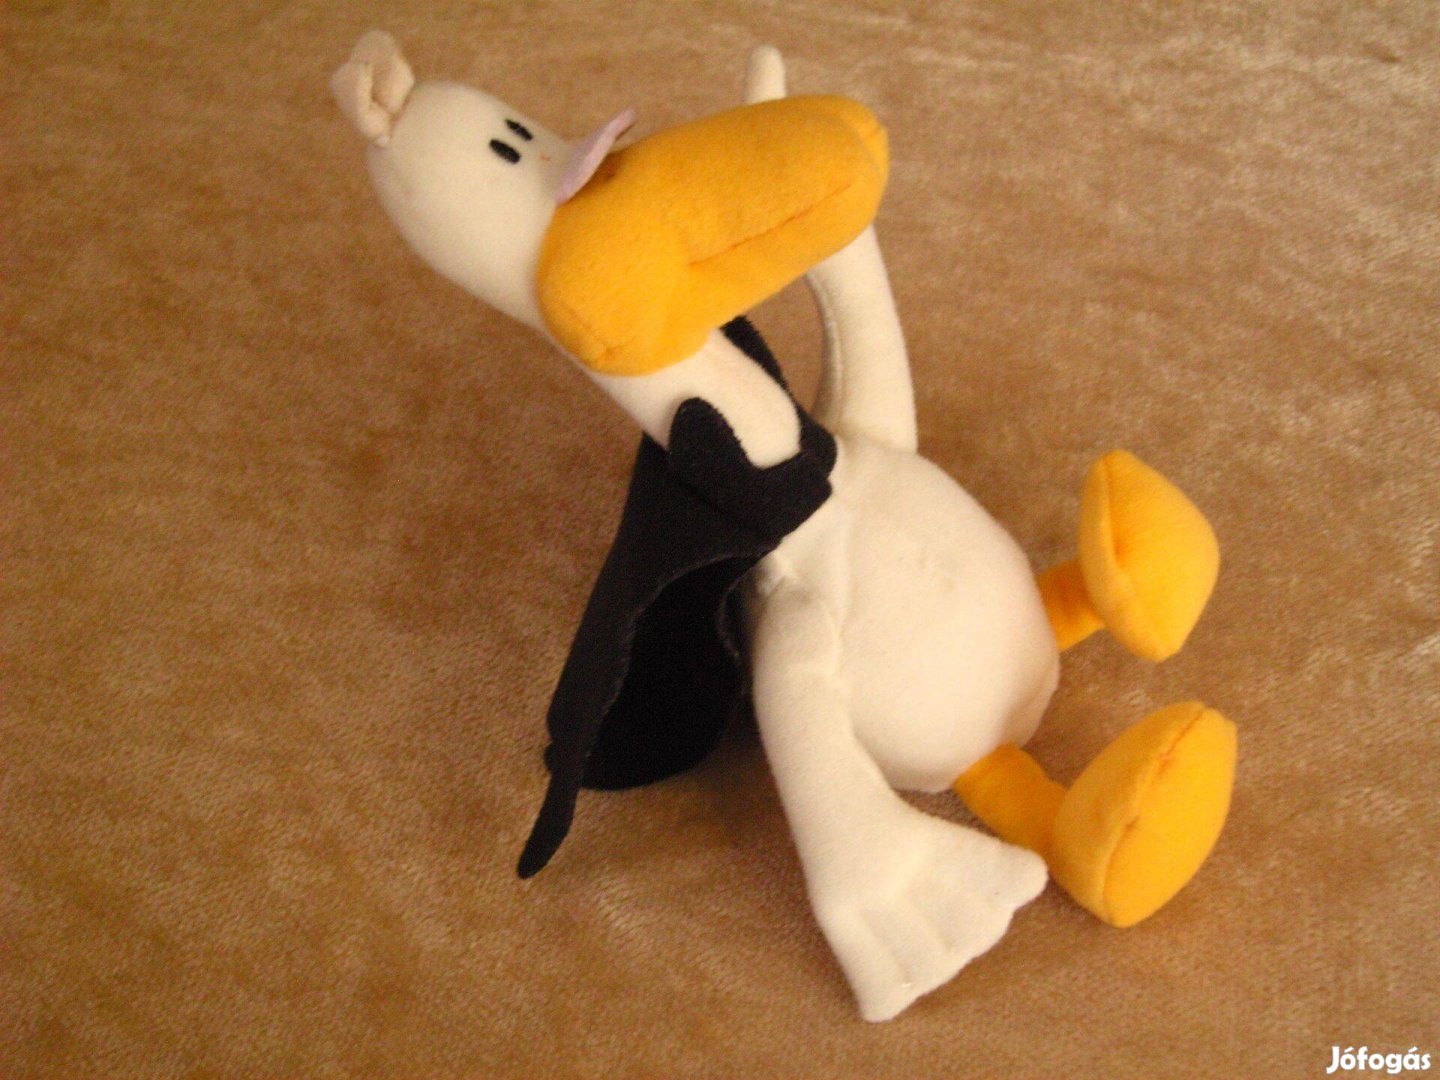 Retró játékfigura, plüssfigura, Donald kacsa mesefigura, 20 cm